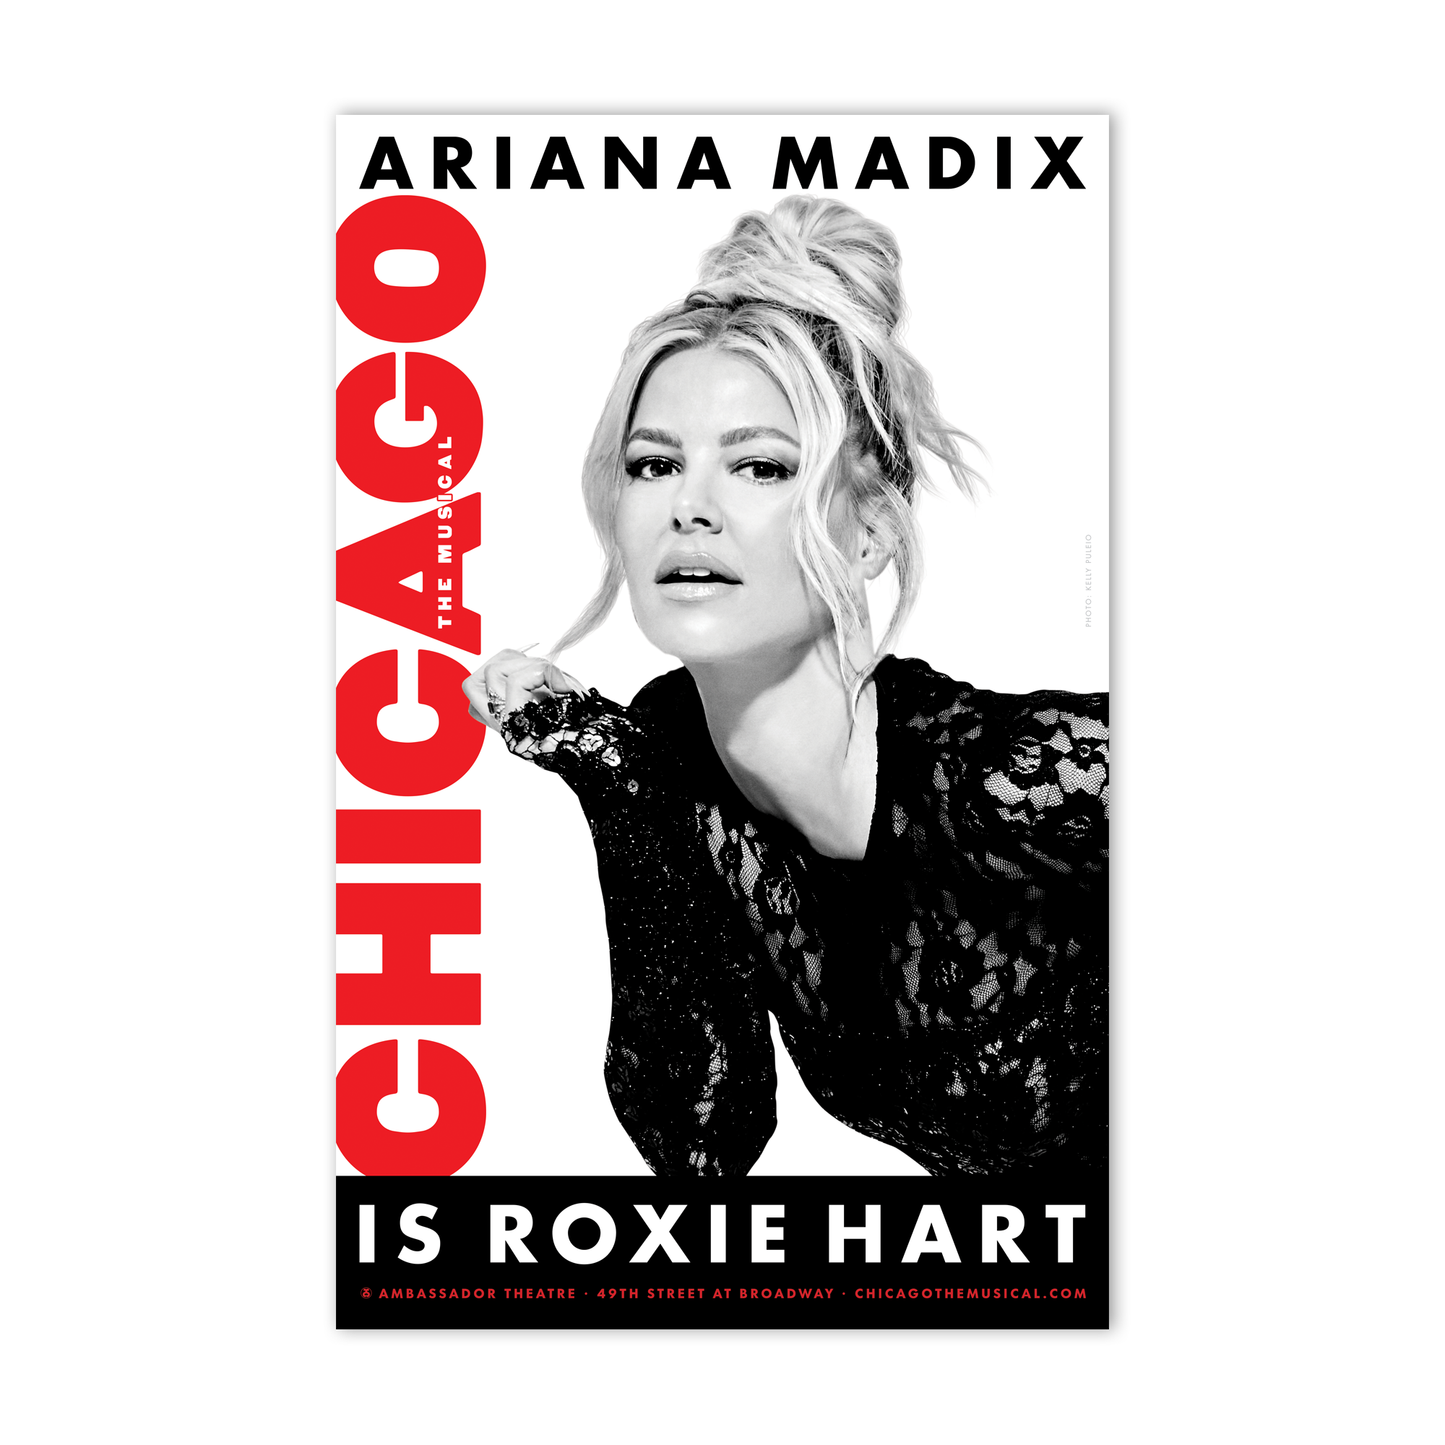 CHICAGO Ariana Madix Photo Windowcard